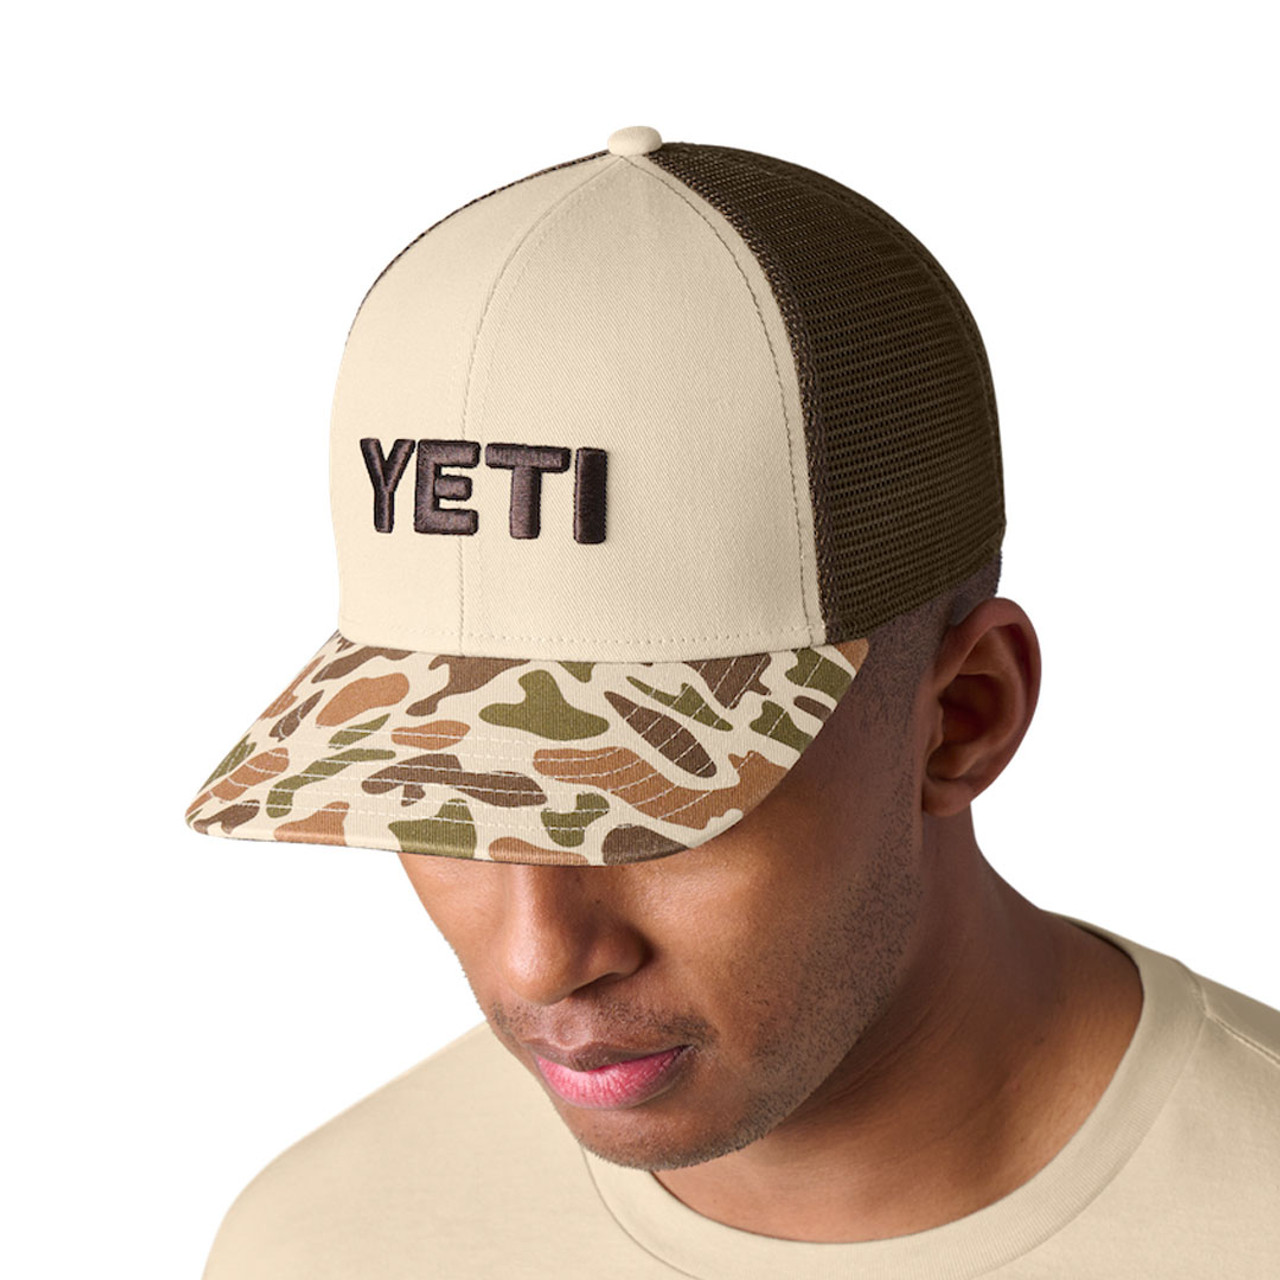 YETI Custom Camo Hat with Patch